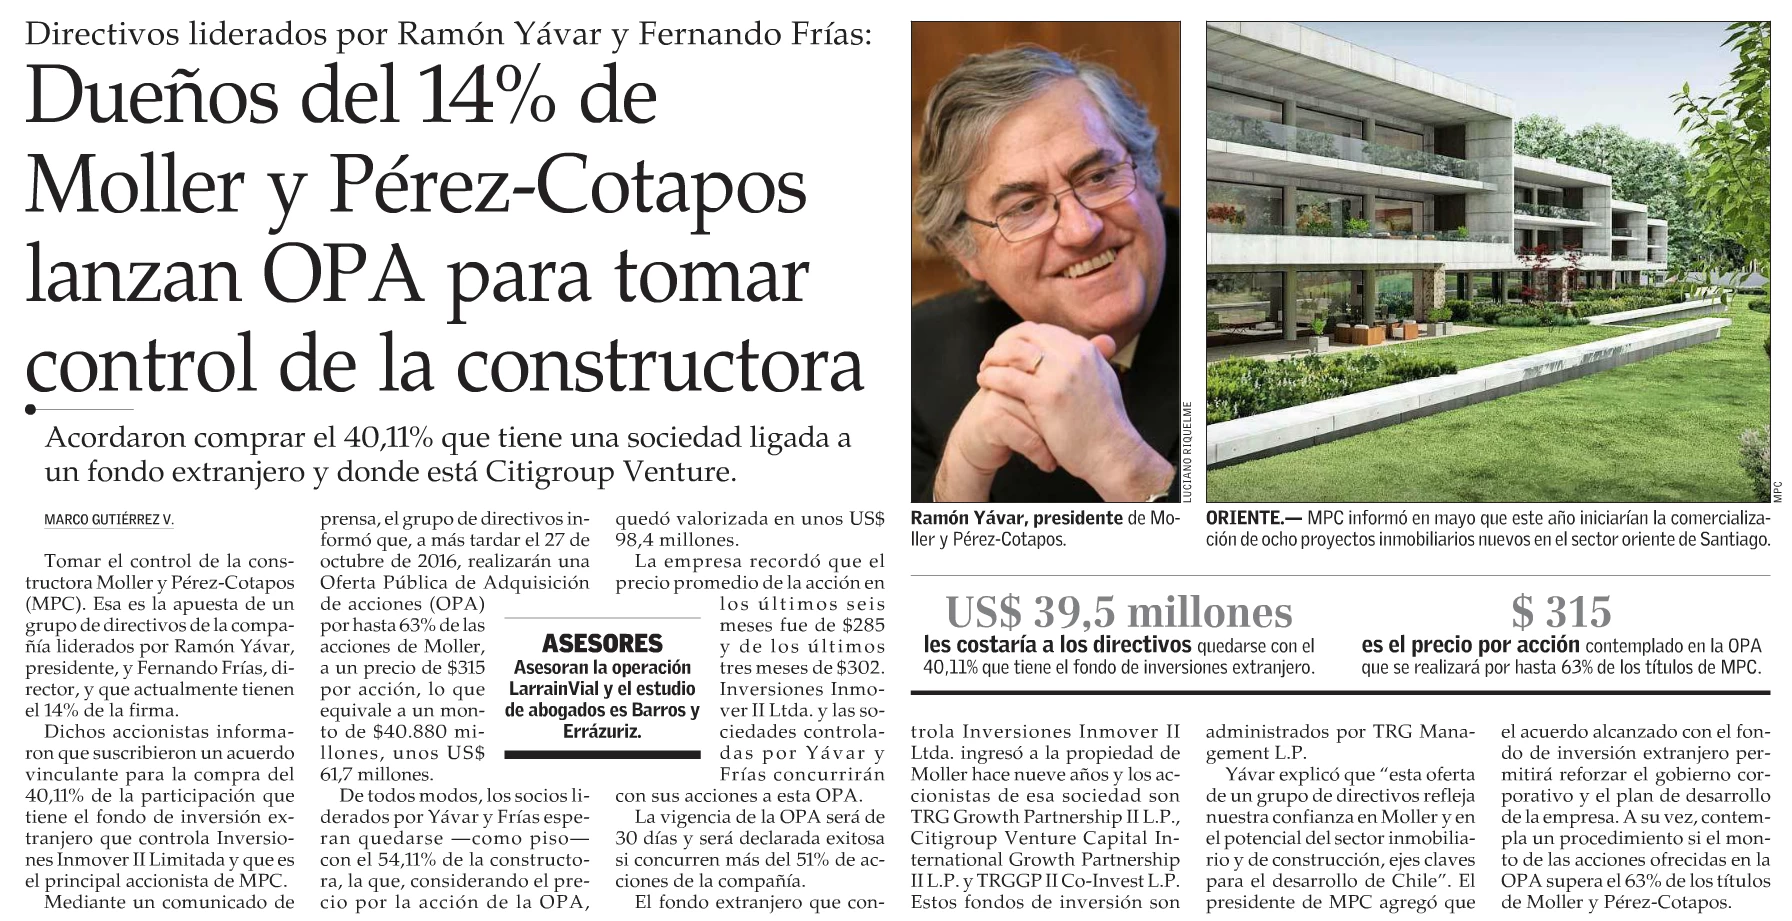 Dueños del 14% de Moller y Pérez-Cotapos lanzan OPA para tomar el control de la constructora